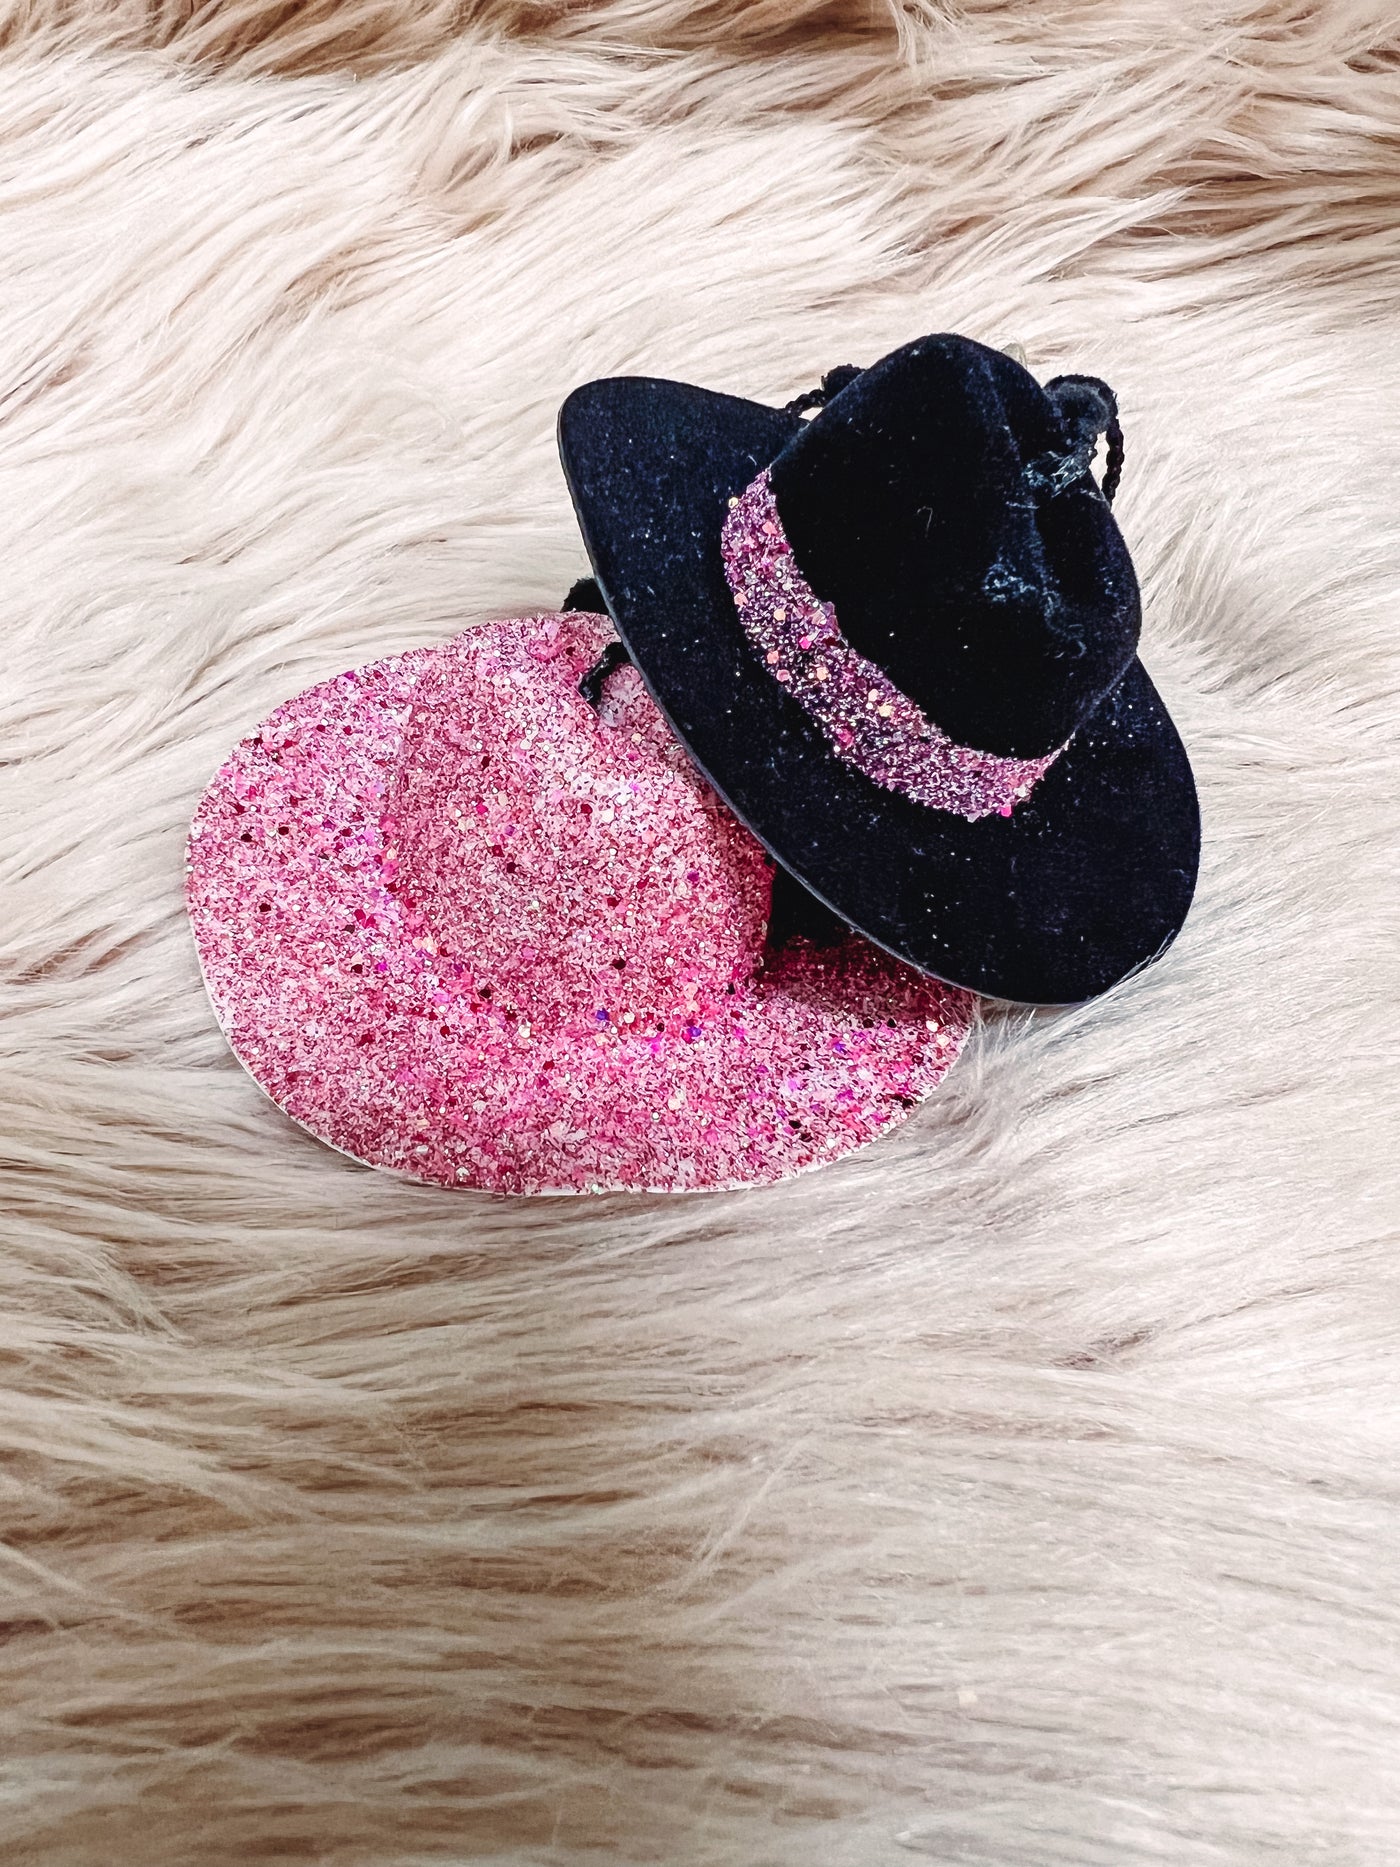 Black + Pink Glitter - Hat Mirror Hangers